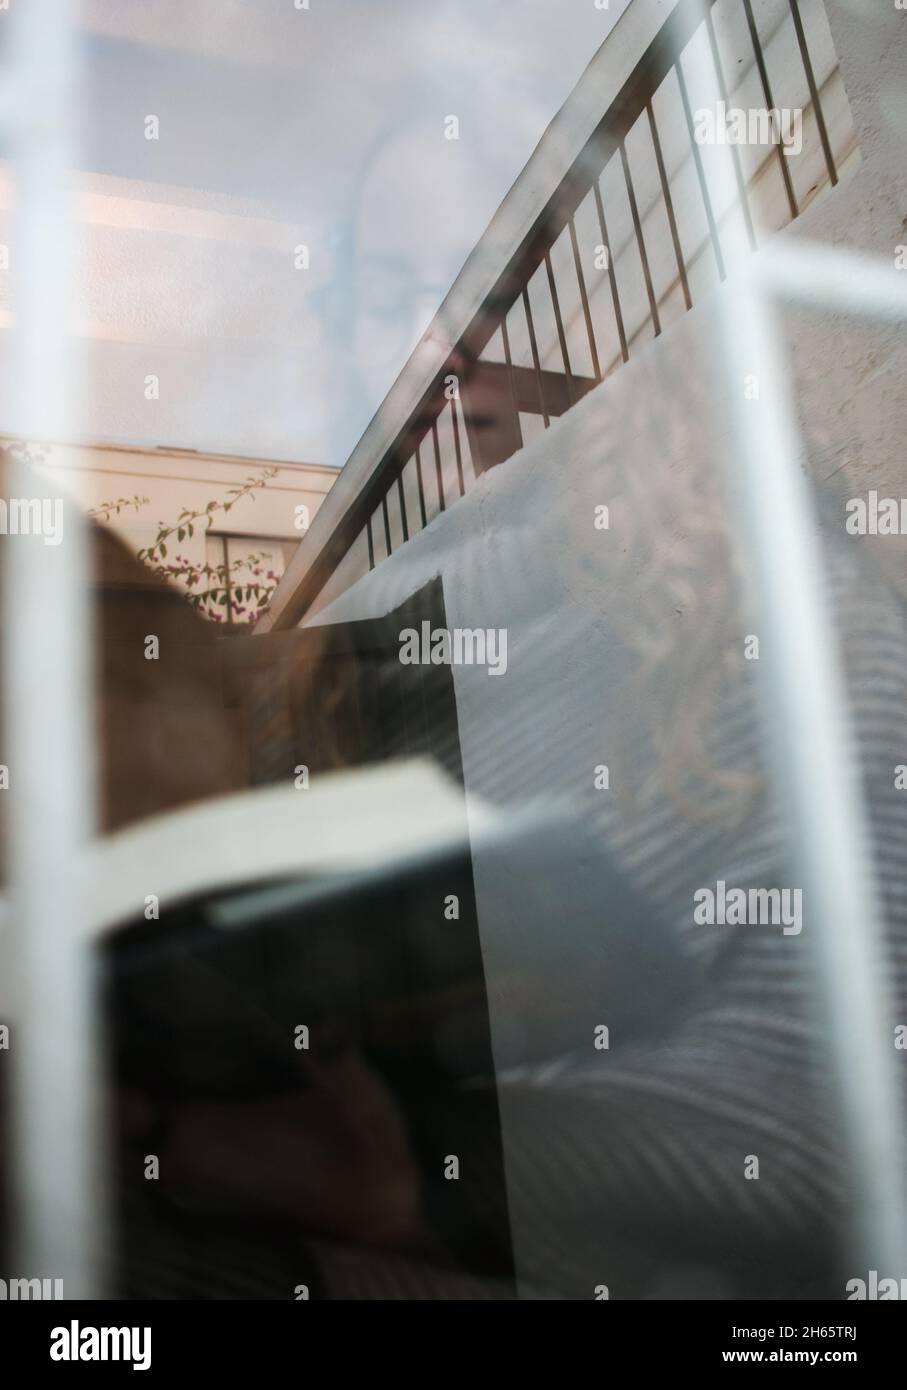 Bel ritratto caldo attraverso la finestra con gocce d'acqua di giovane adulto lettura in una giornata piovosa Foto Stock